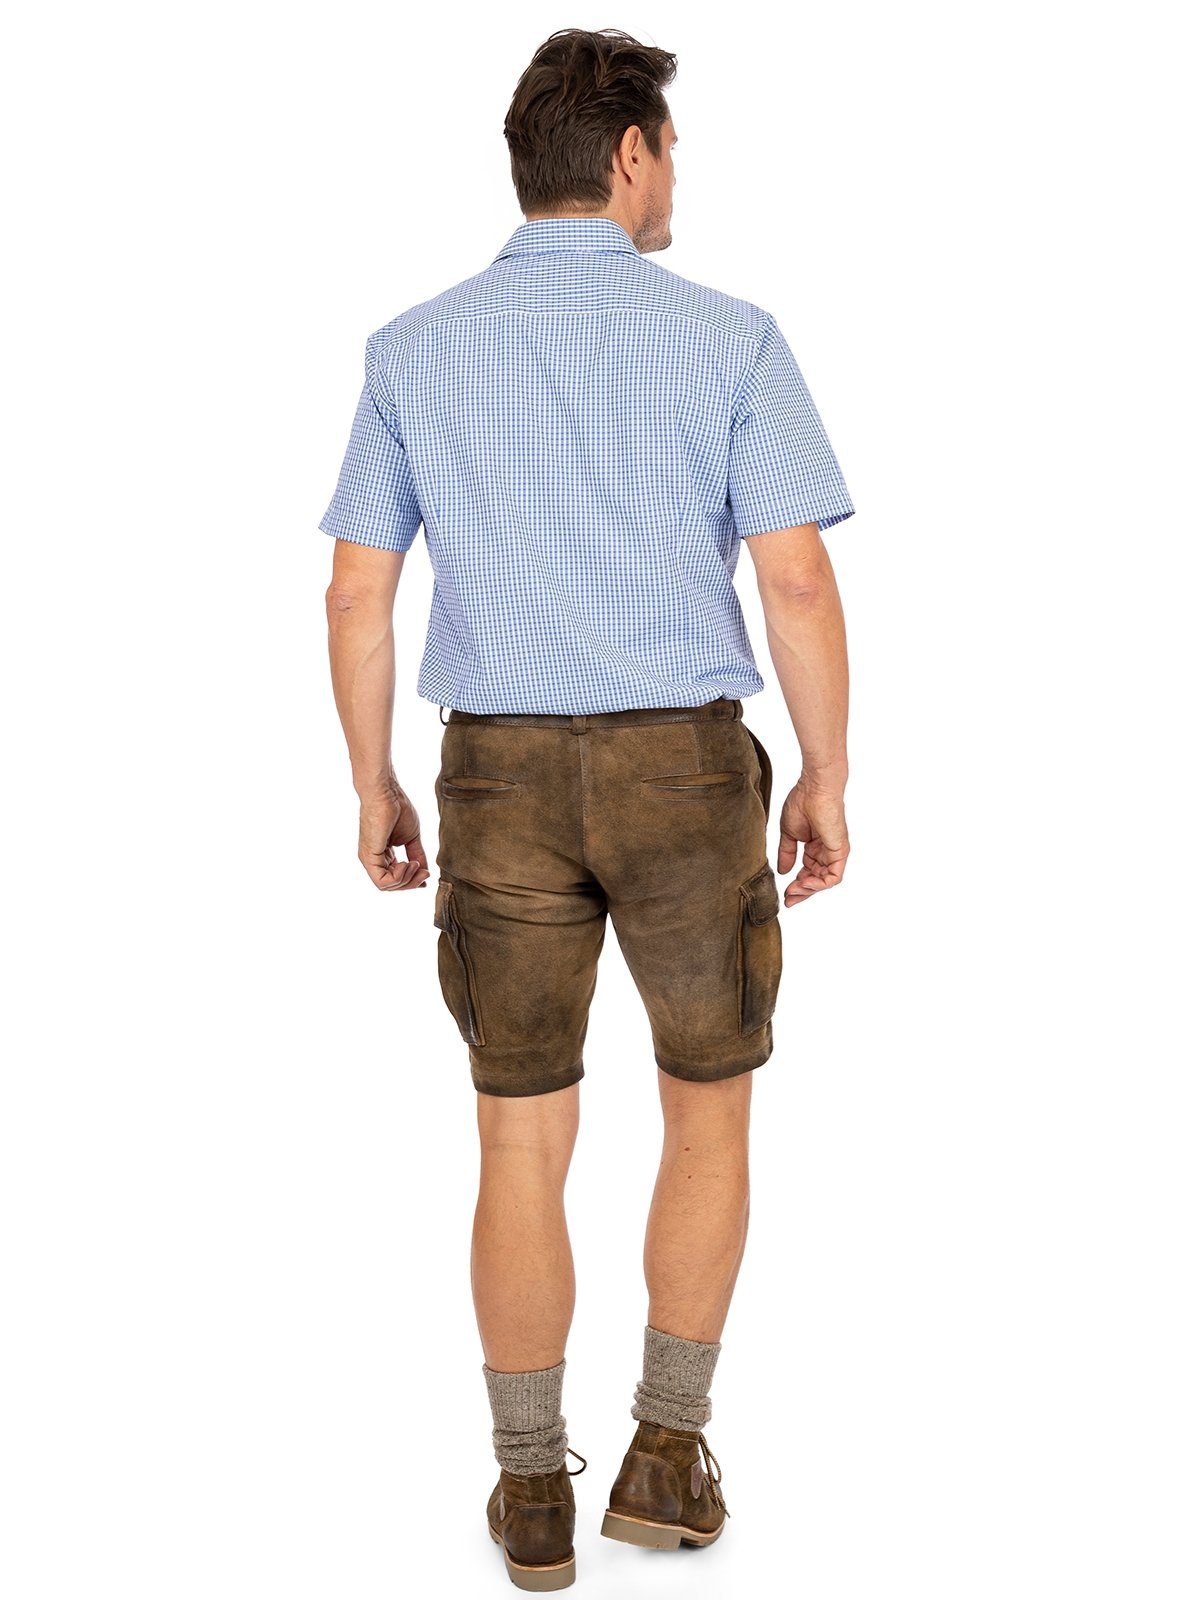 OS-Trachten Trachtenhemd Karo (Slim blau IMMENSTADT Fit) Kurzarmhemd